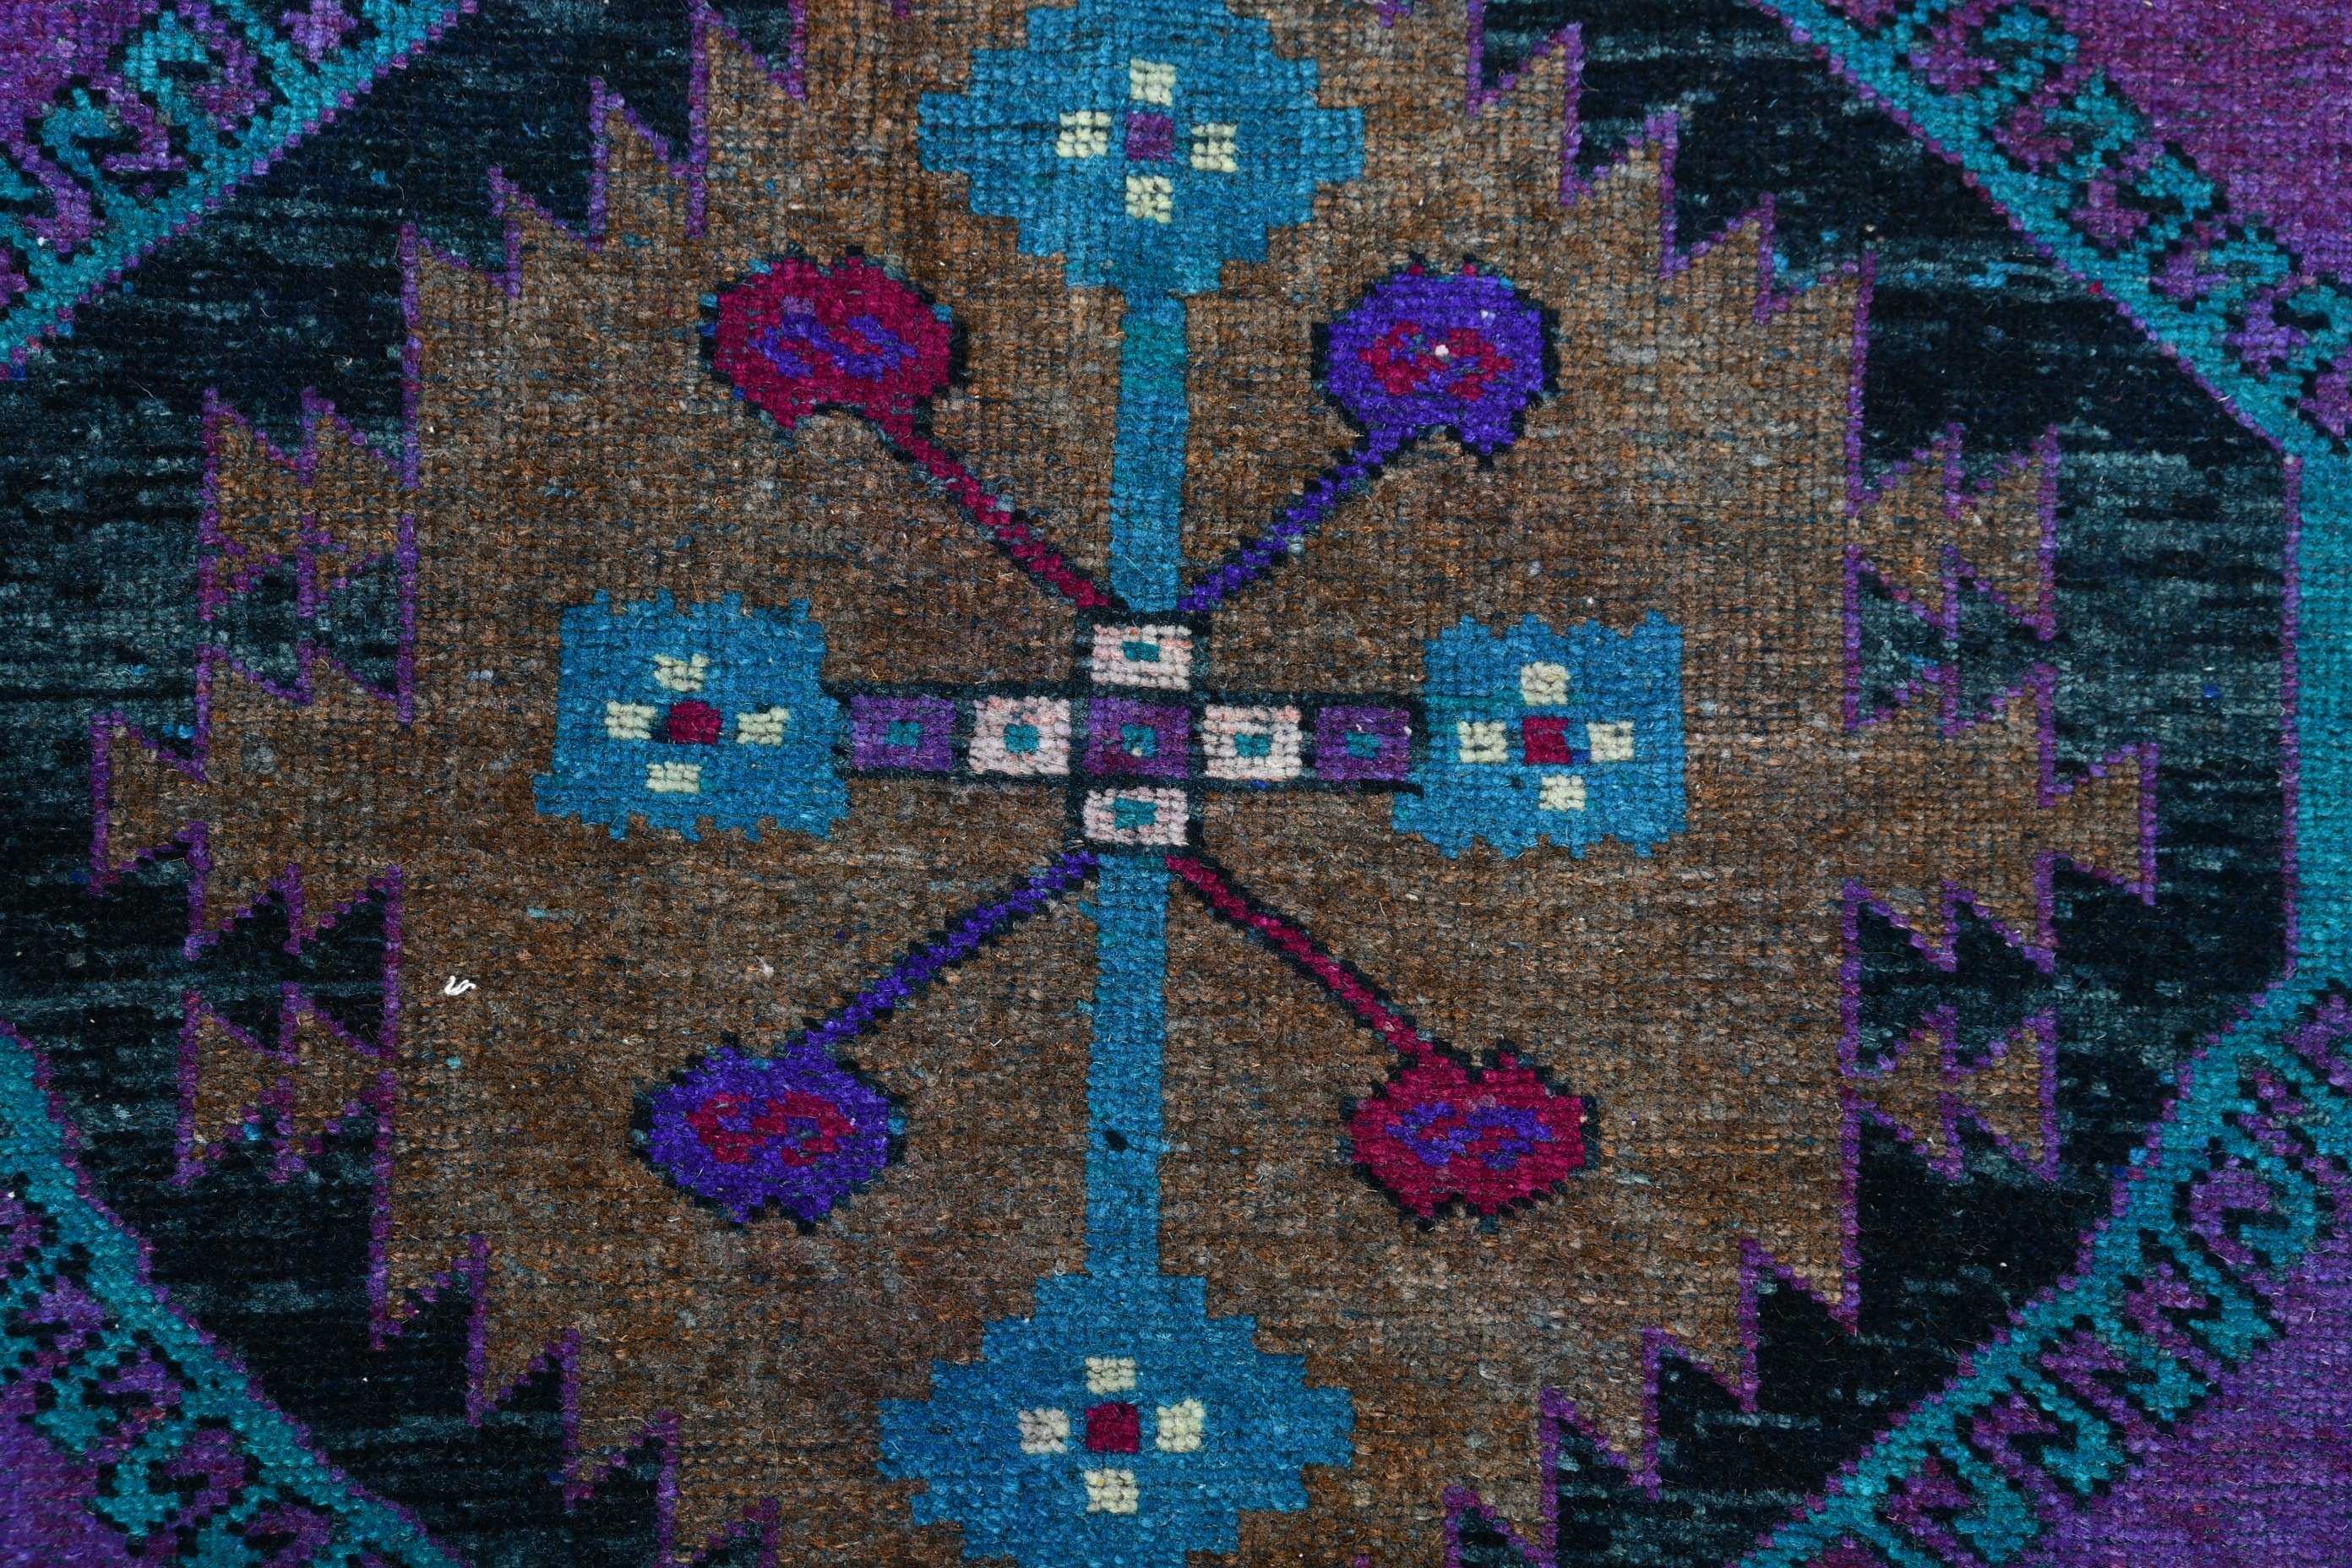 Purple Cool Rug, Vintage Rug, Decorative Rug, 2.3x2.6 ft Small Rugs, Home Decor Rug, Turkish Rugs, Nursery Rug, Bathroom Rug, Floor Rugs